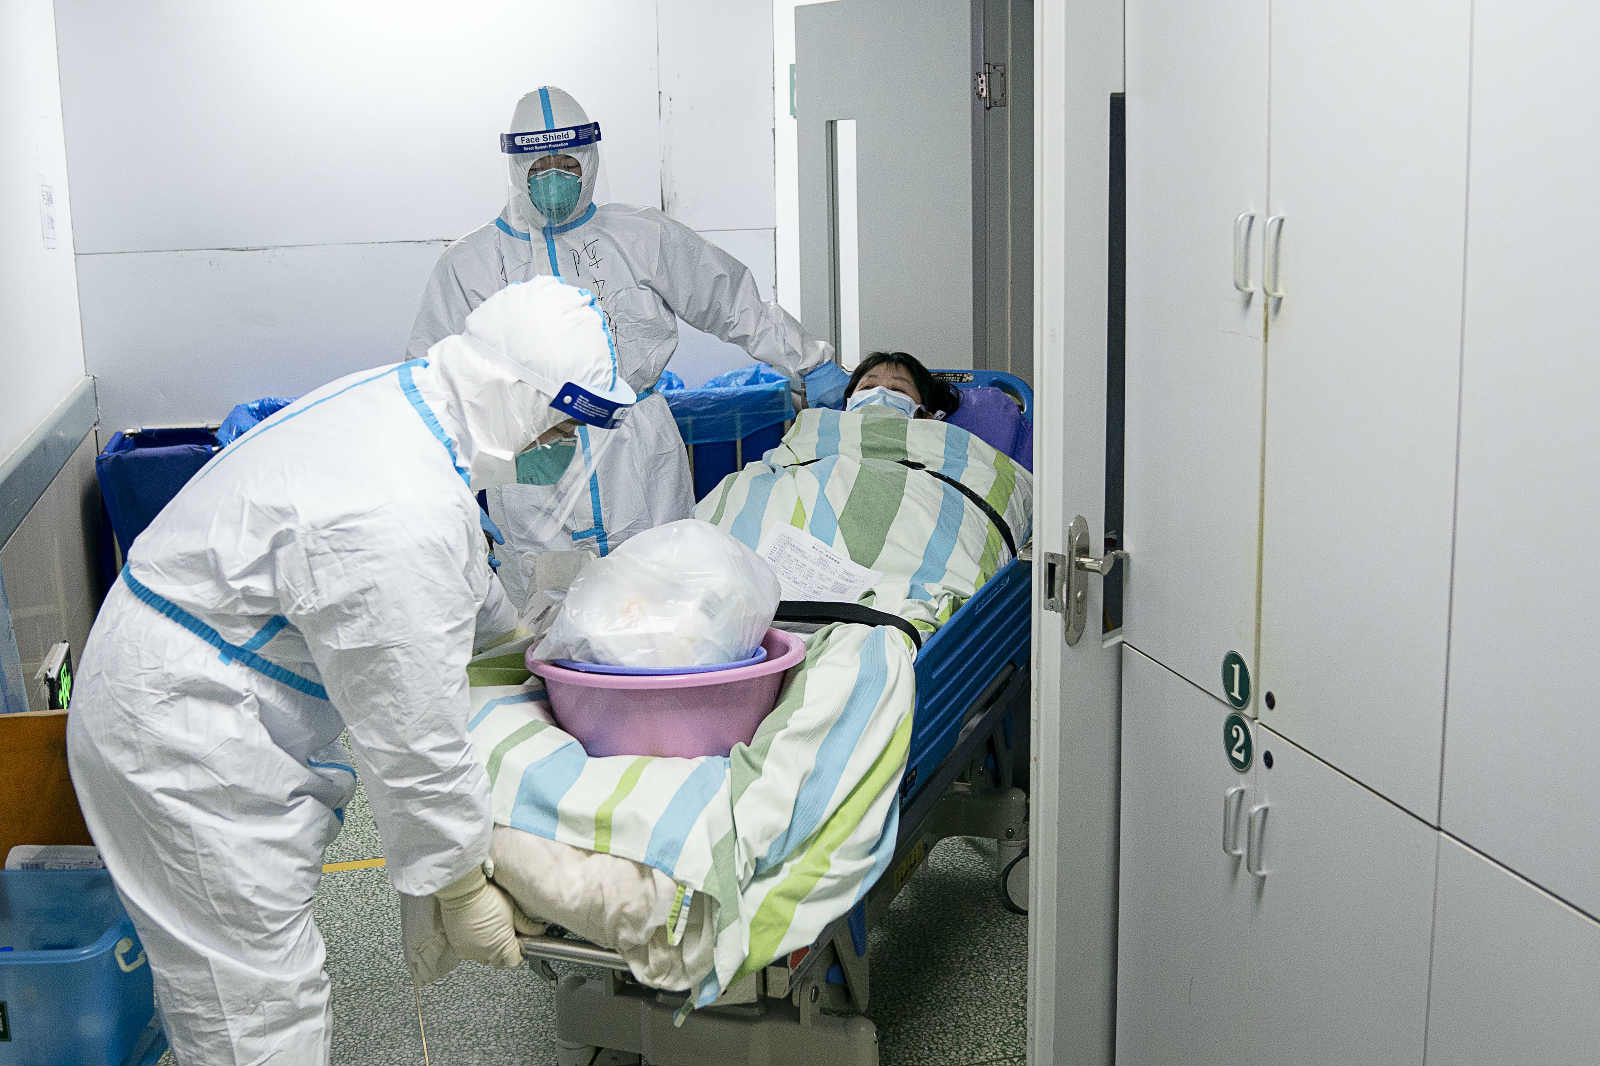 Loạt ảnh &quot;vỡ trận&quot; trong bệnh viện Vũ Hán: Xác chết la liệt, người dân chen lấn đòi điều trị y tế, bác sĩ mặc bỉm cả ngày vì không thể đi vệ sinh - Ảnh 4.